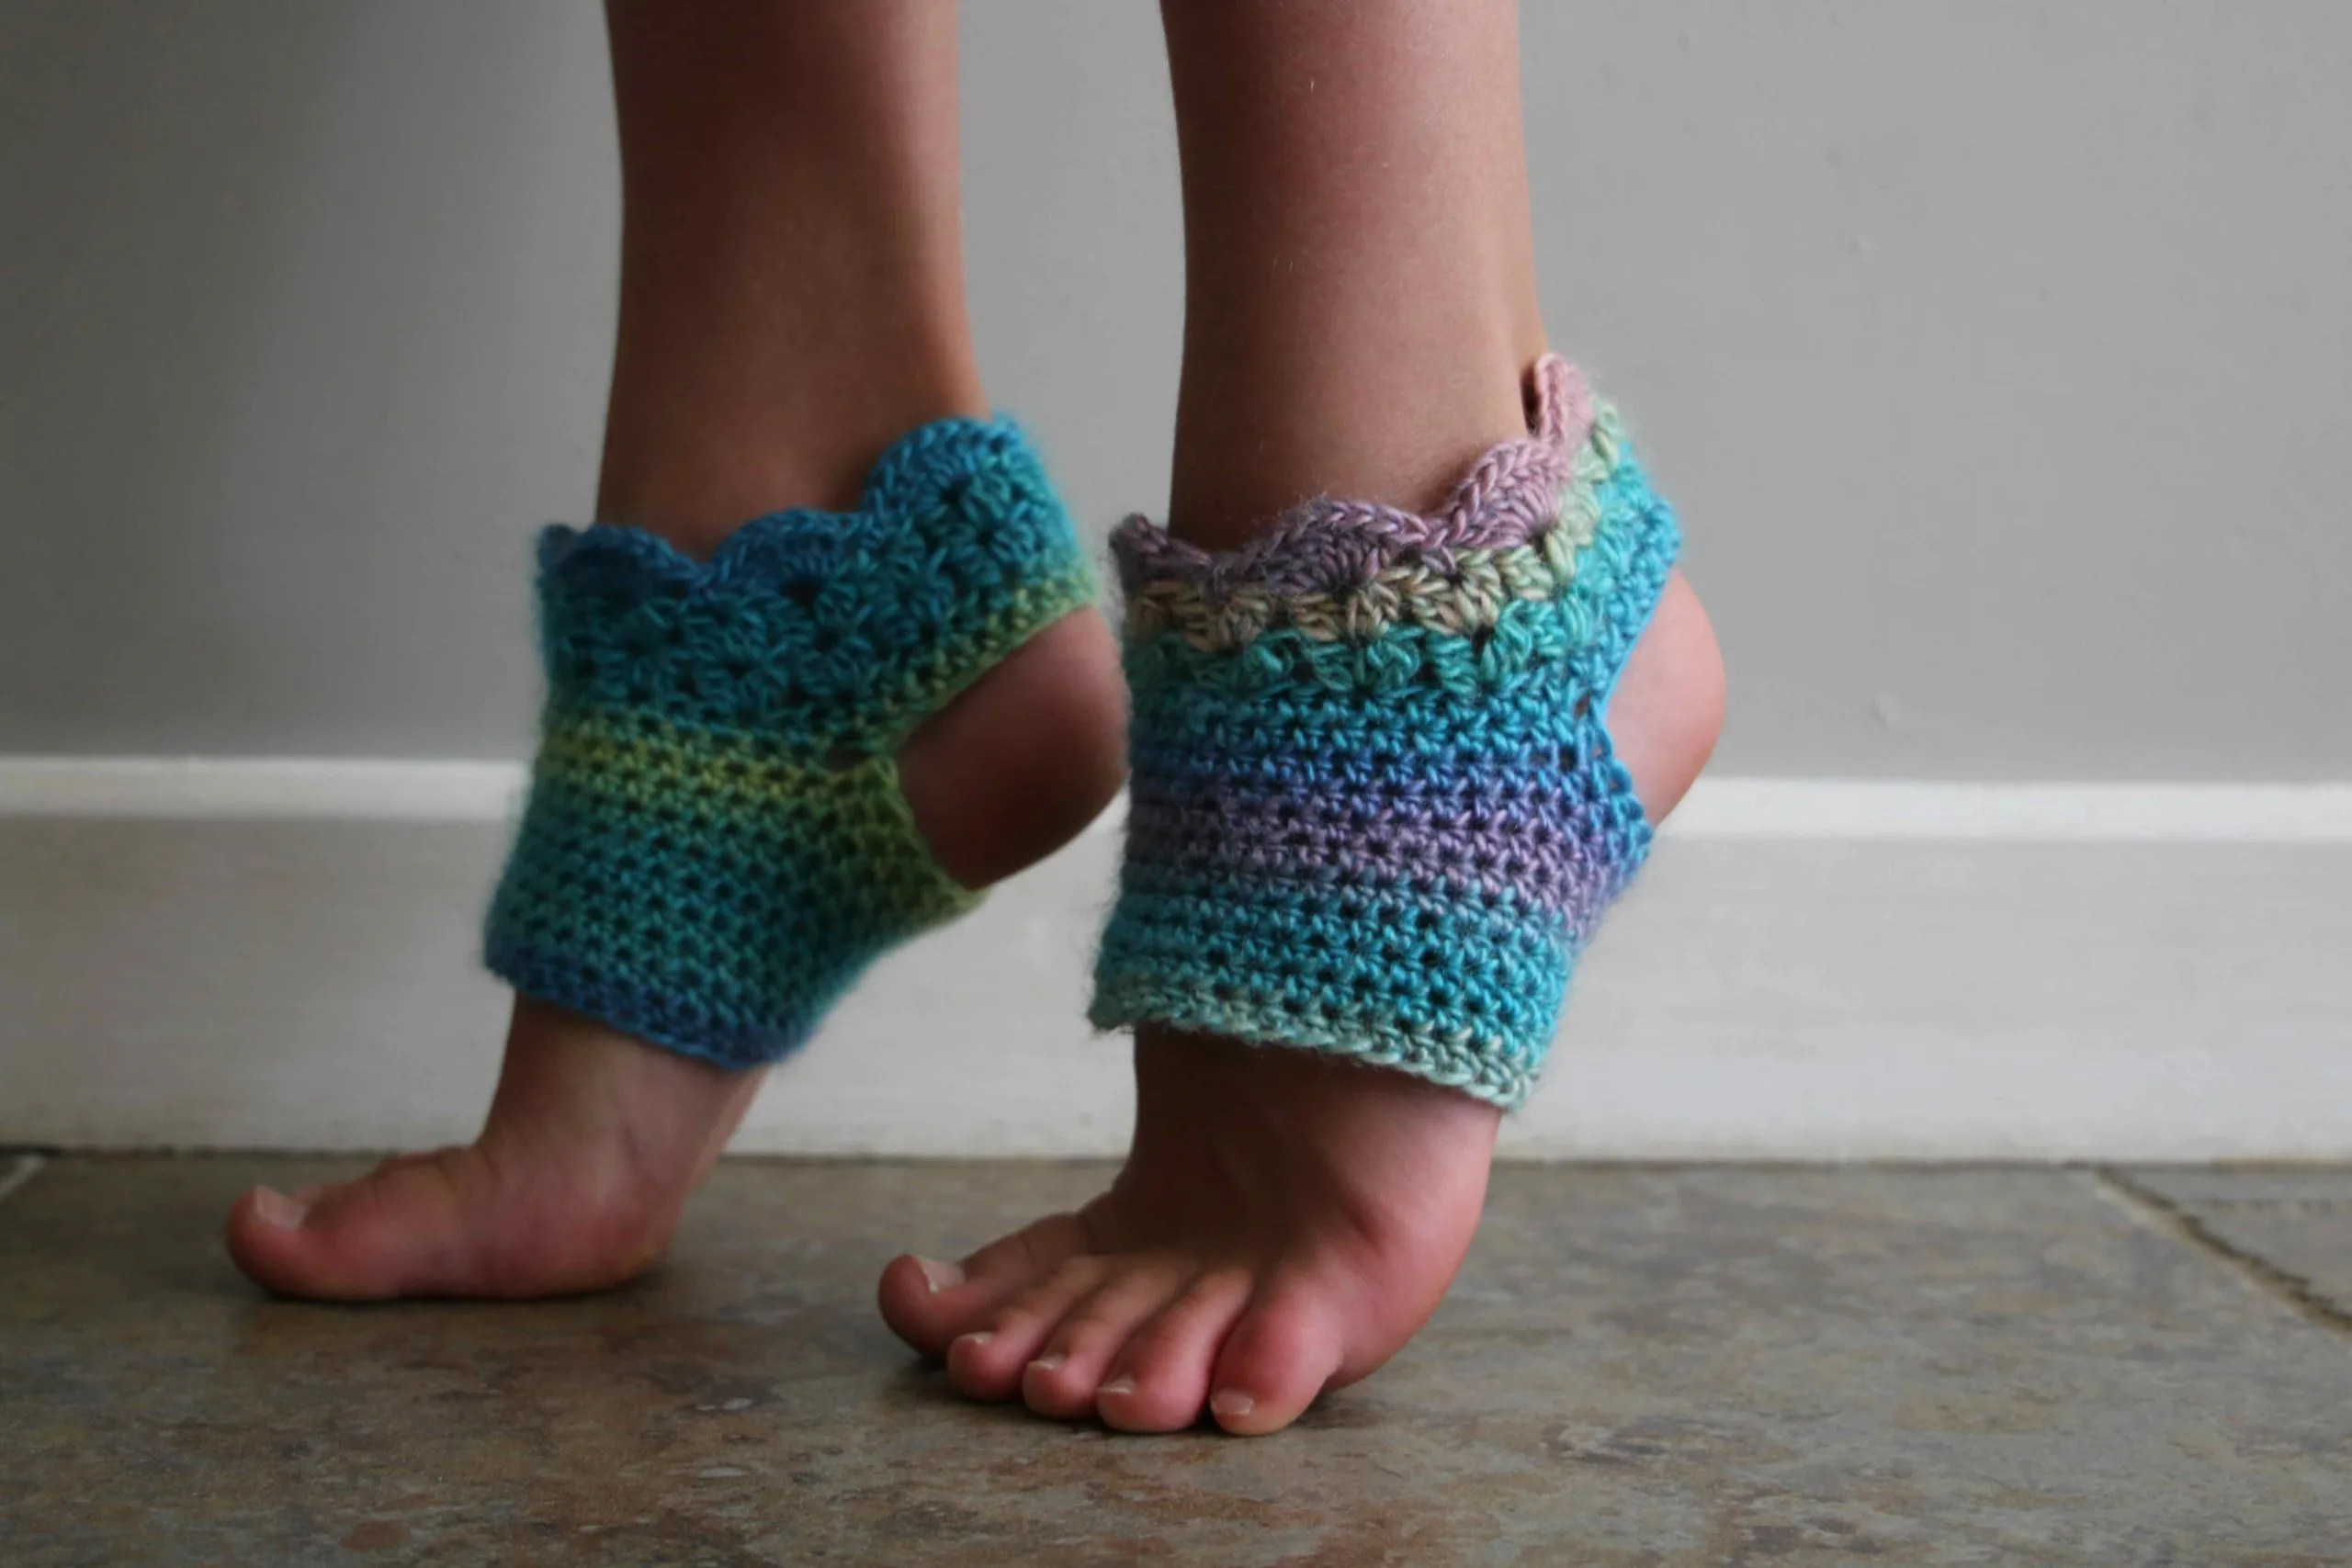 Yoga Socks Crochet Free Patterns - Crochet & Knitting  Yoga socks crochet,  Yoga socks crochet pattern, Free crochet pattern